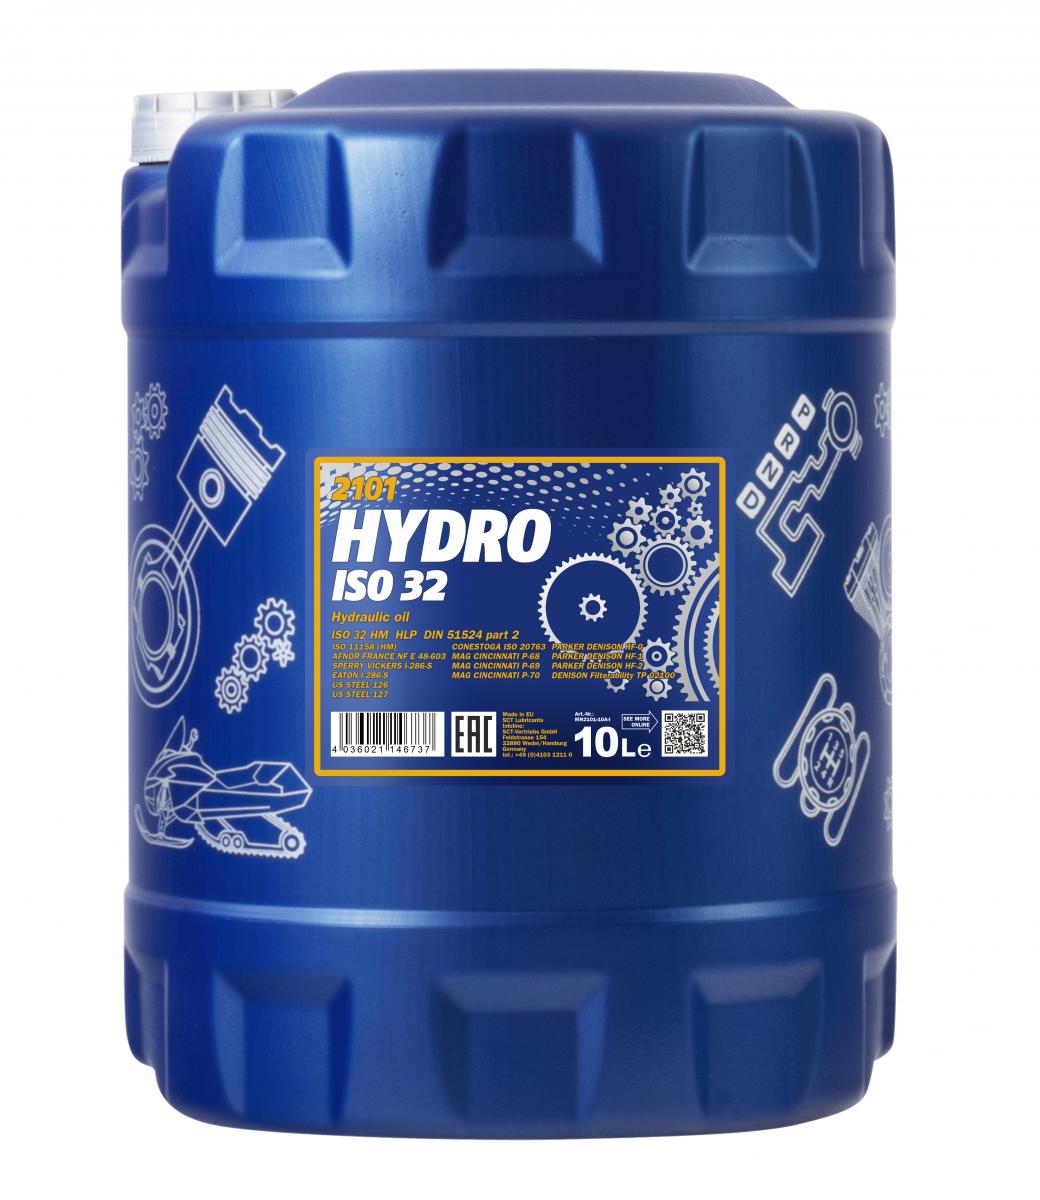 40 Liter (4x10) MANNOL Hydro ISO 32 Hydrauliköl Hydraulikflüssigkeit Hebebühne